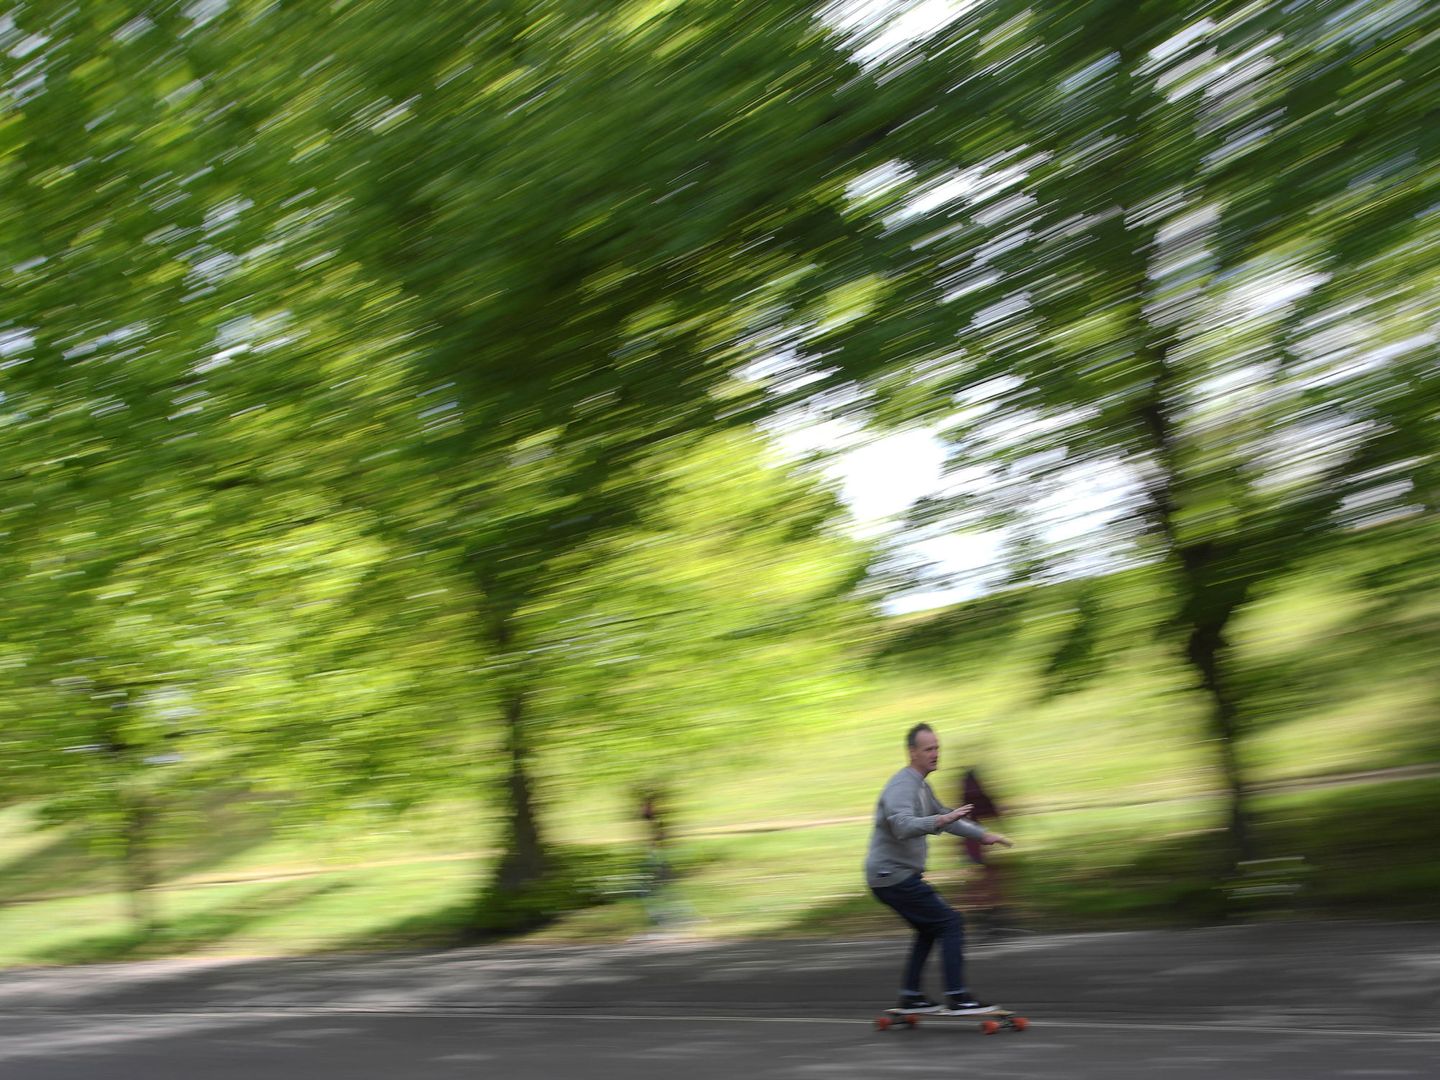 El parque Greenwich, donde ocurrieron los hechos, es un popular lugar en Londres para pasear y relajarse. (Reuters)